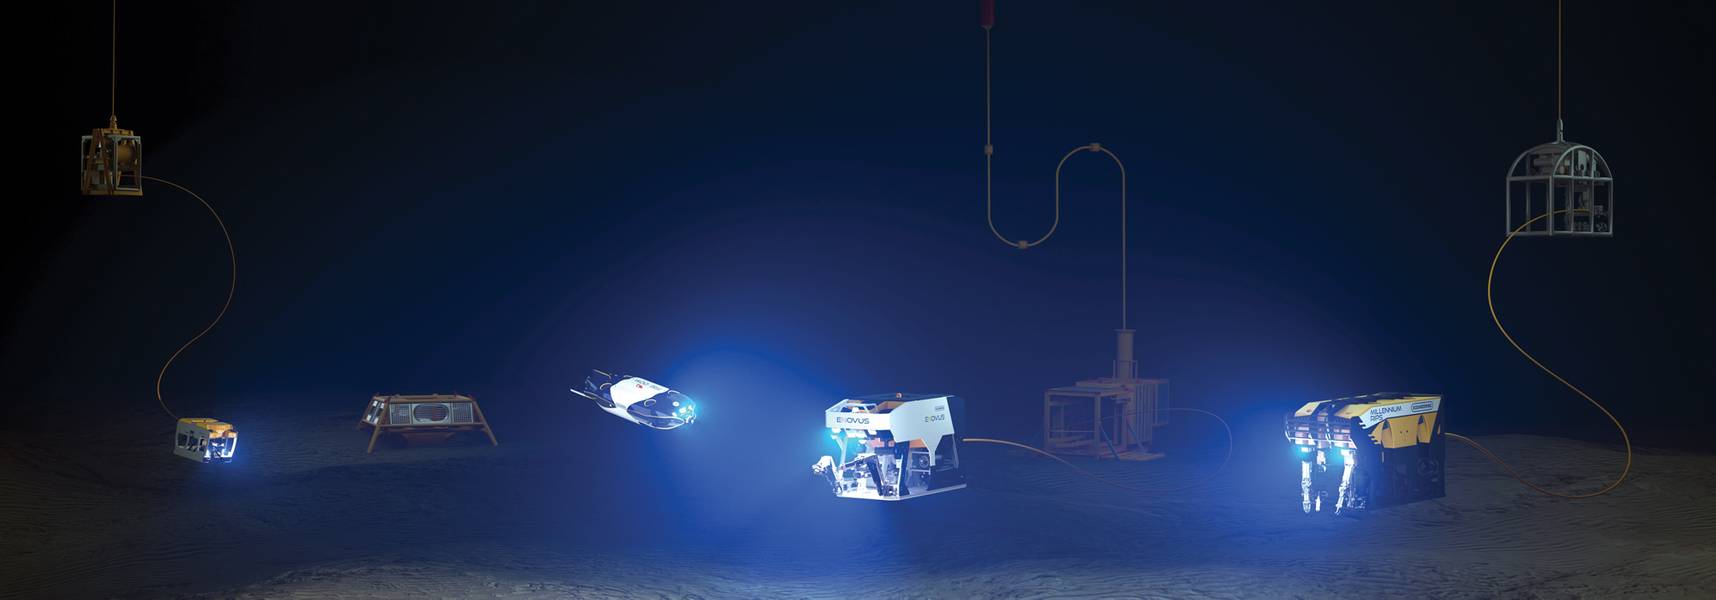 La línea ROV de Oceaneering con los vehículos de próxima generación Freedom y E-ROV incluidos. Cortesía de Oceaneering International